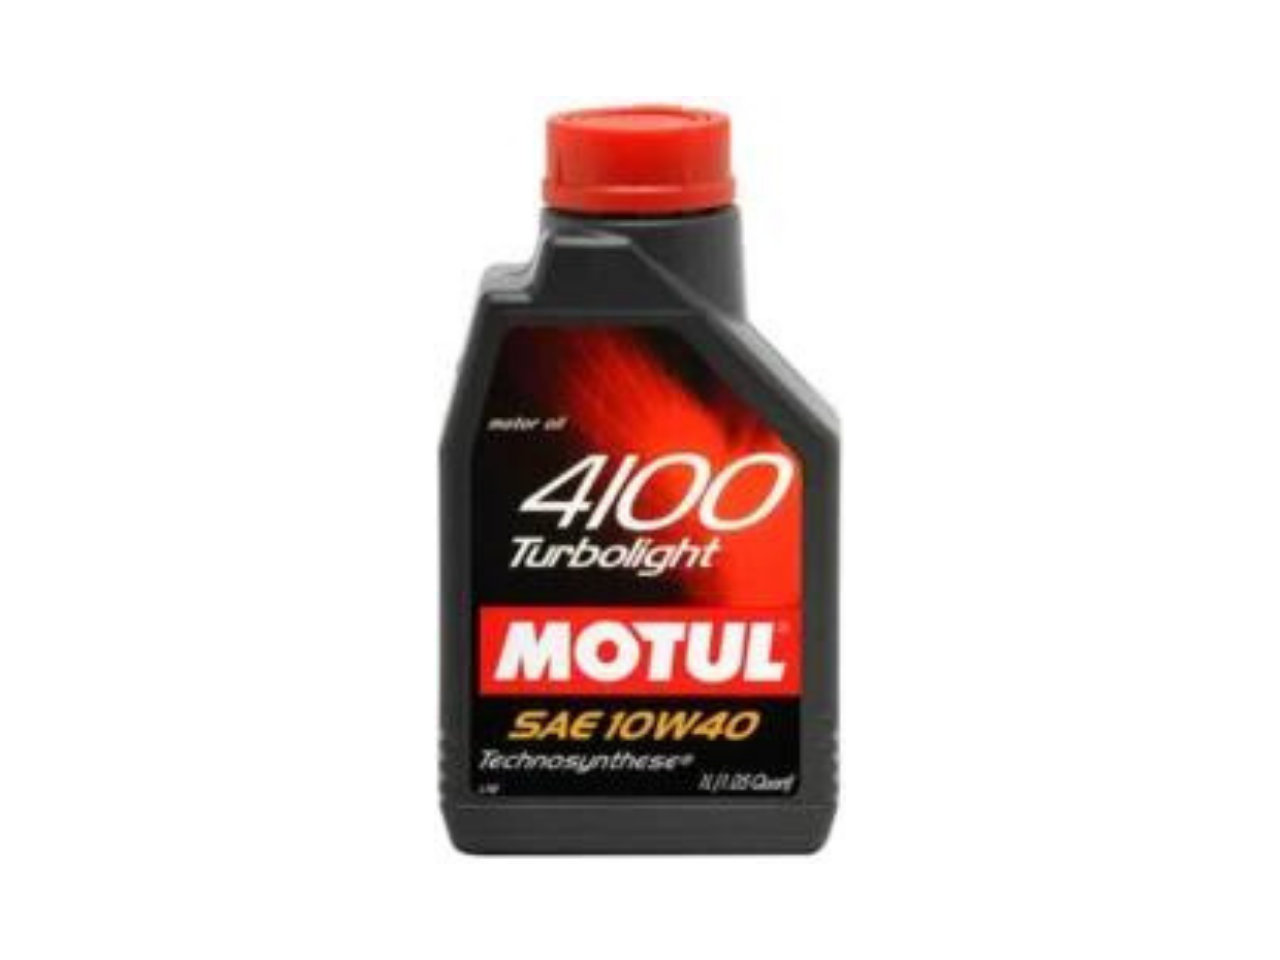 Купить Моторное масло Motul 4100 Turbolight